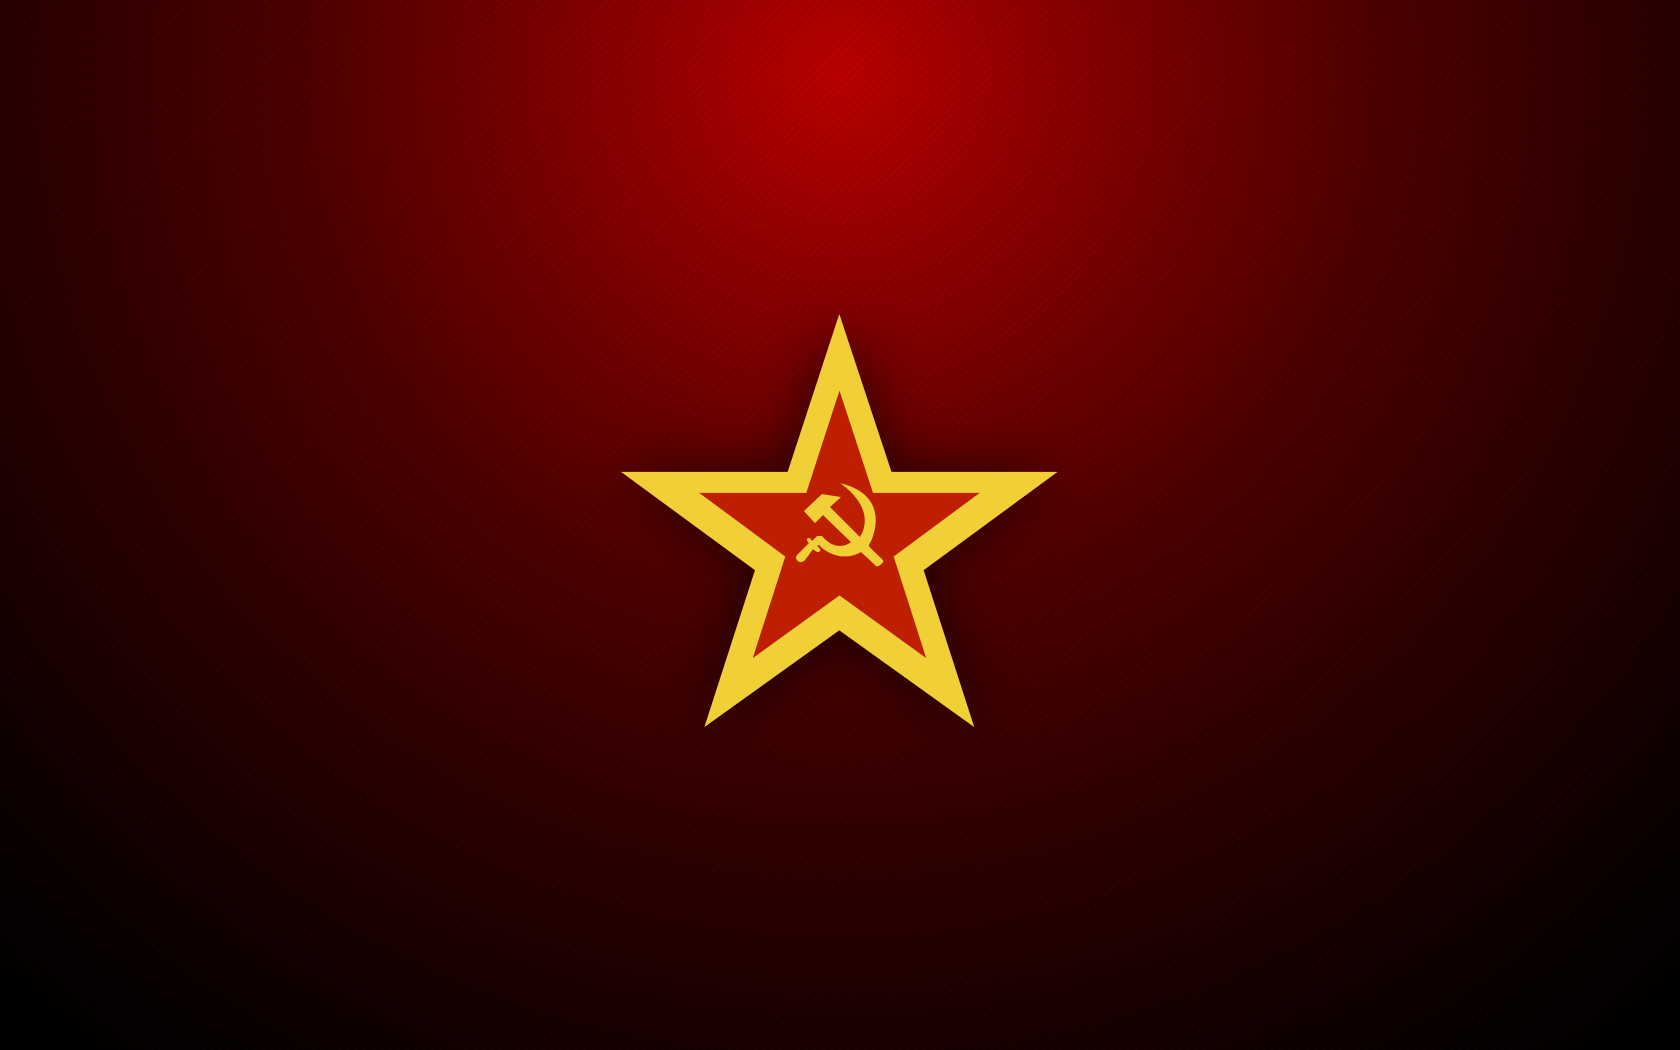 공산주의자 플래그 벽지,깃발,폰트,제도법,상징,상징